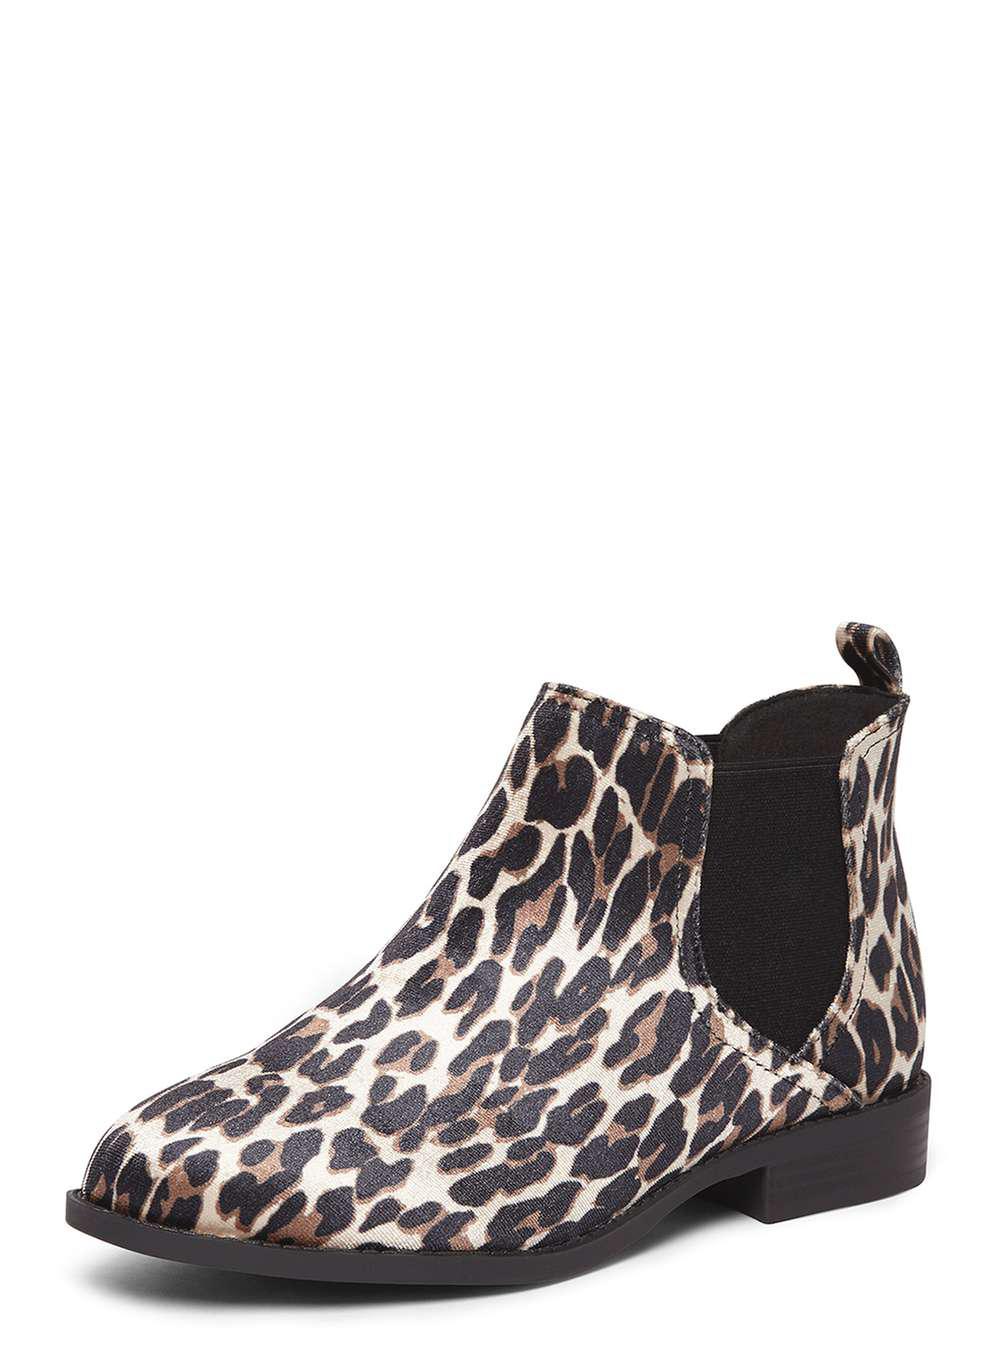 dorothy perkins leopard boots